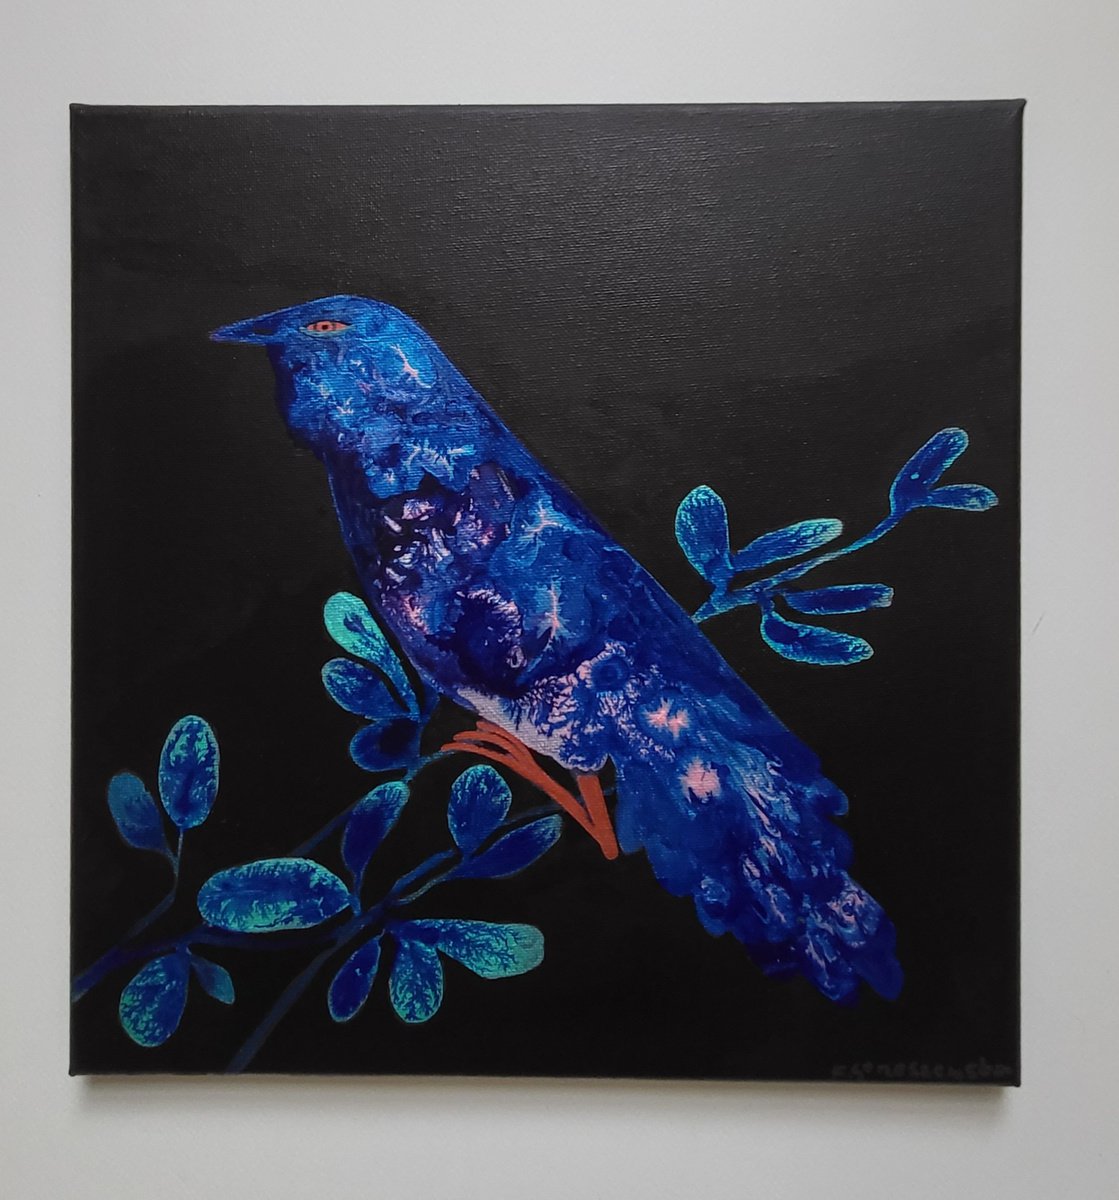 Night Bird by Kamila Strzeszewska